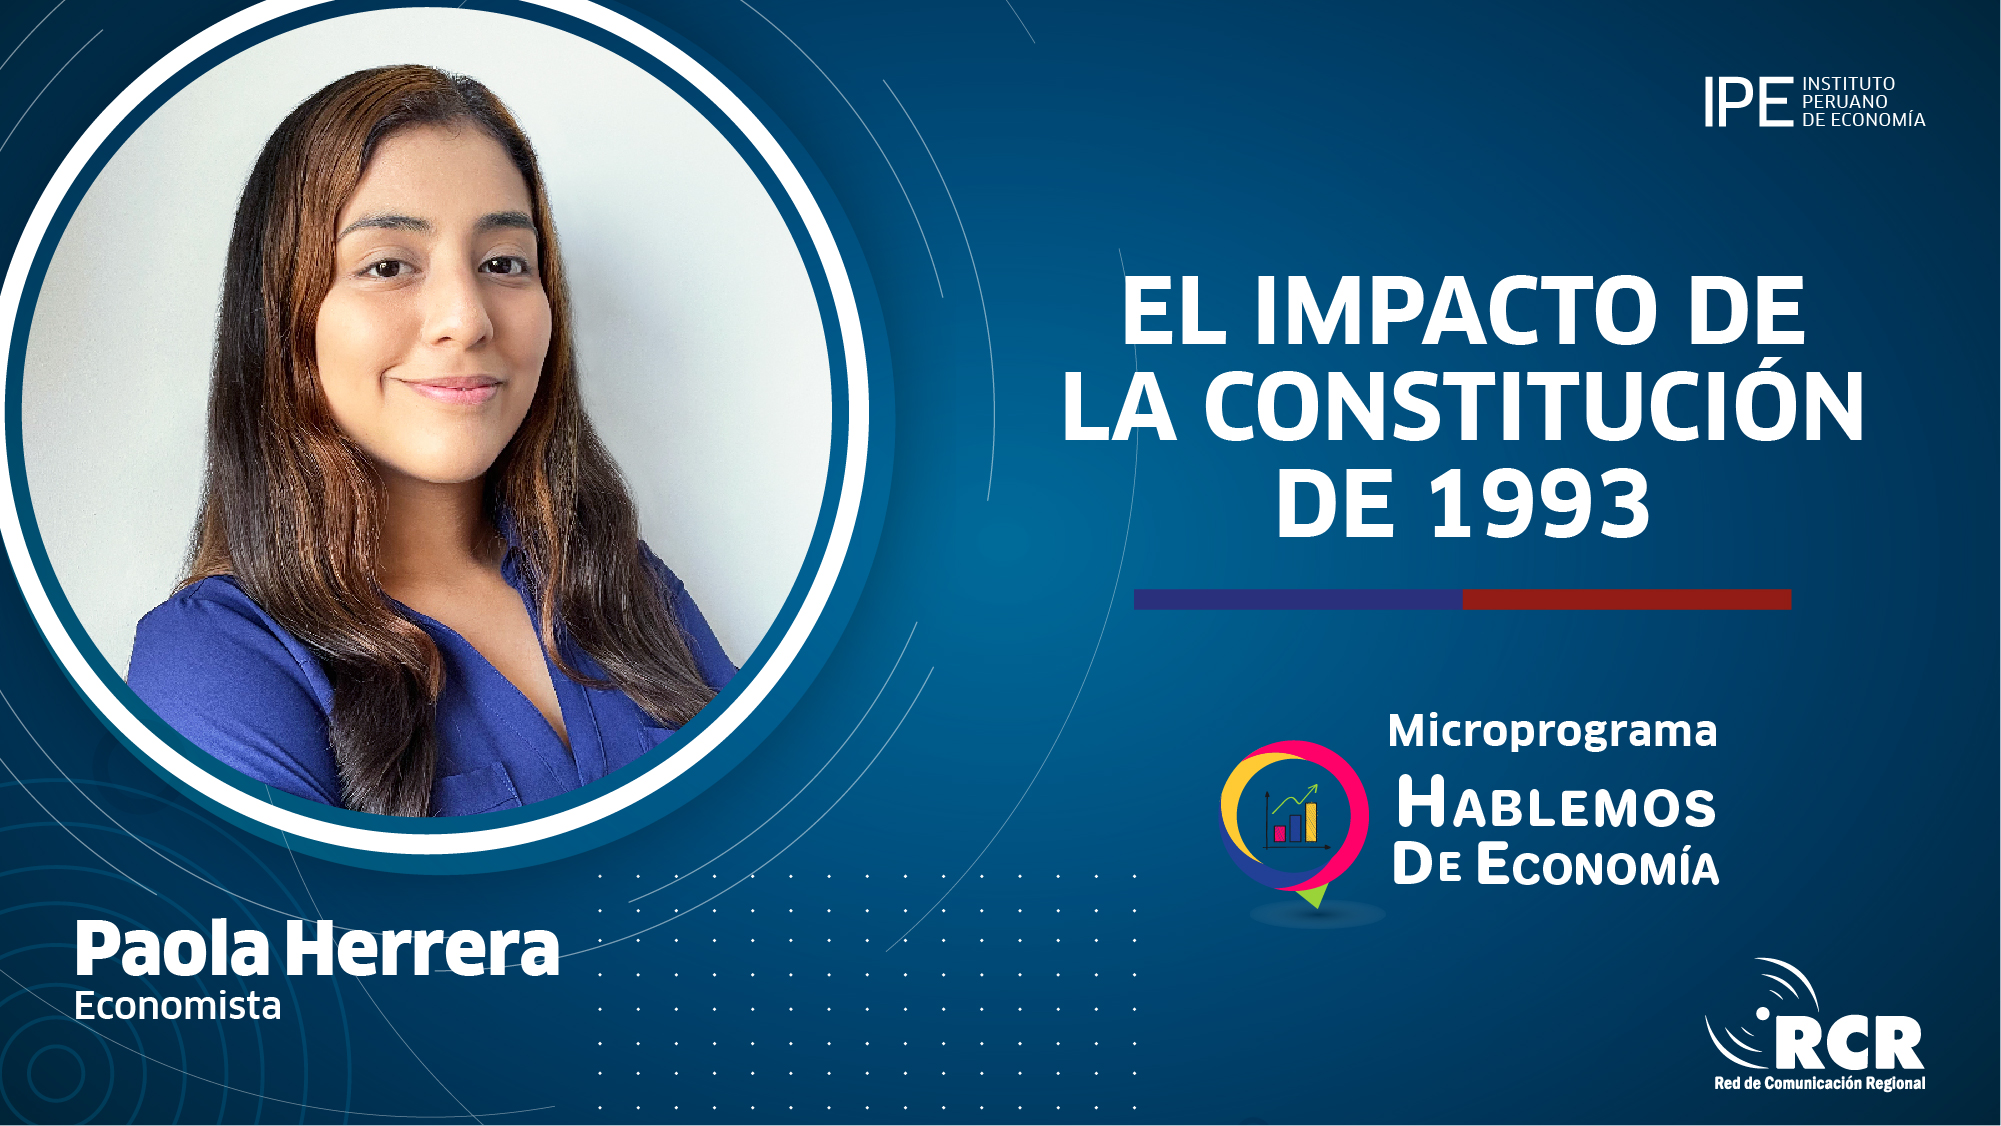 Constitución de 1993, capítulo económico, constitución, crecimiento, Paola Herrera